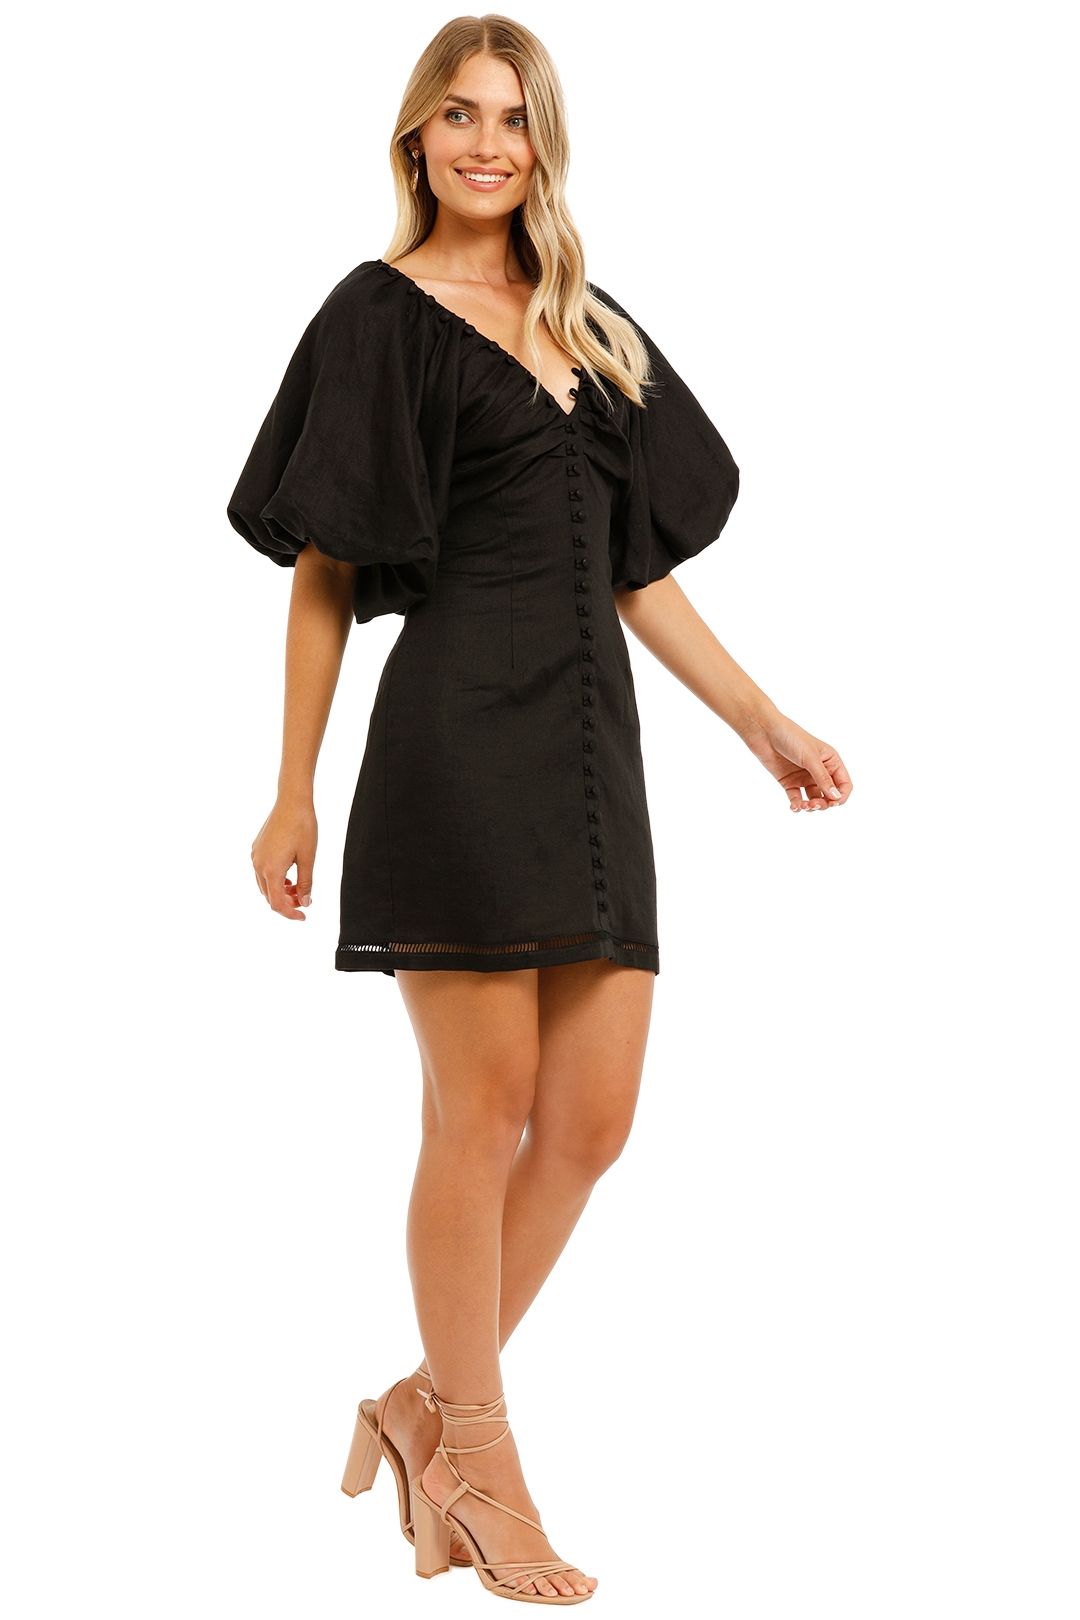 Joslin Brienne Mini Dress Black Mini Length